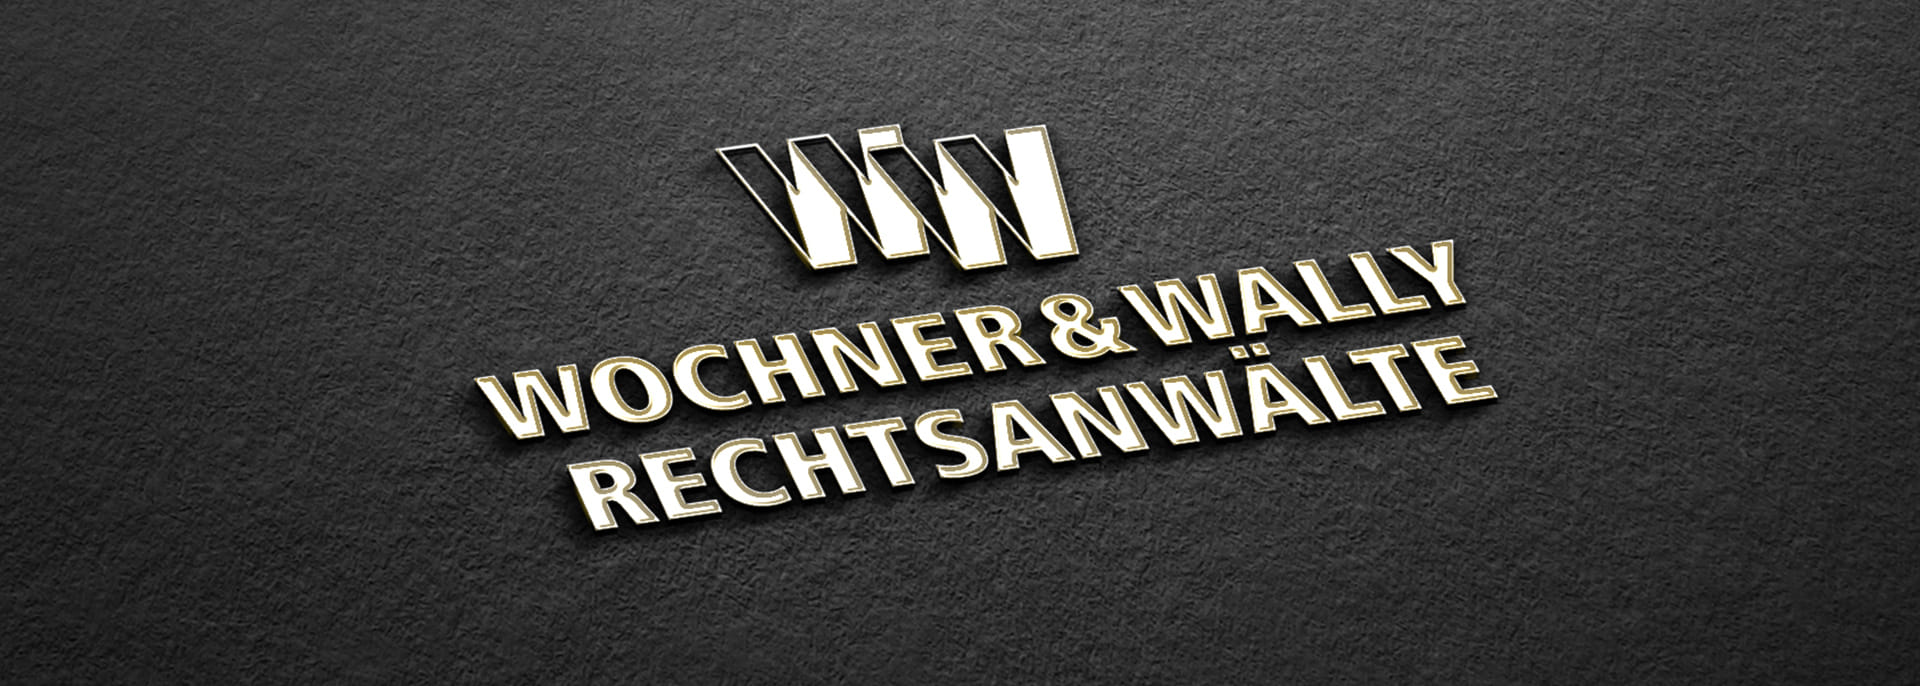 Wochner & Wally Rechtsanwälte